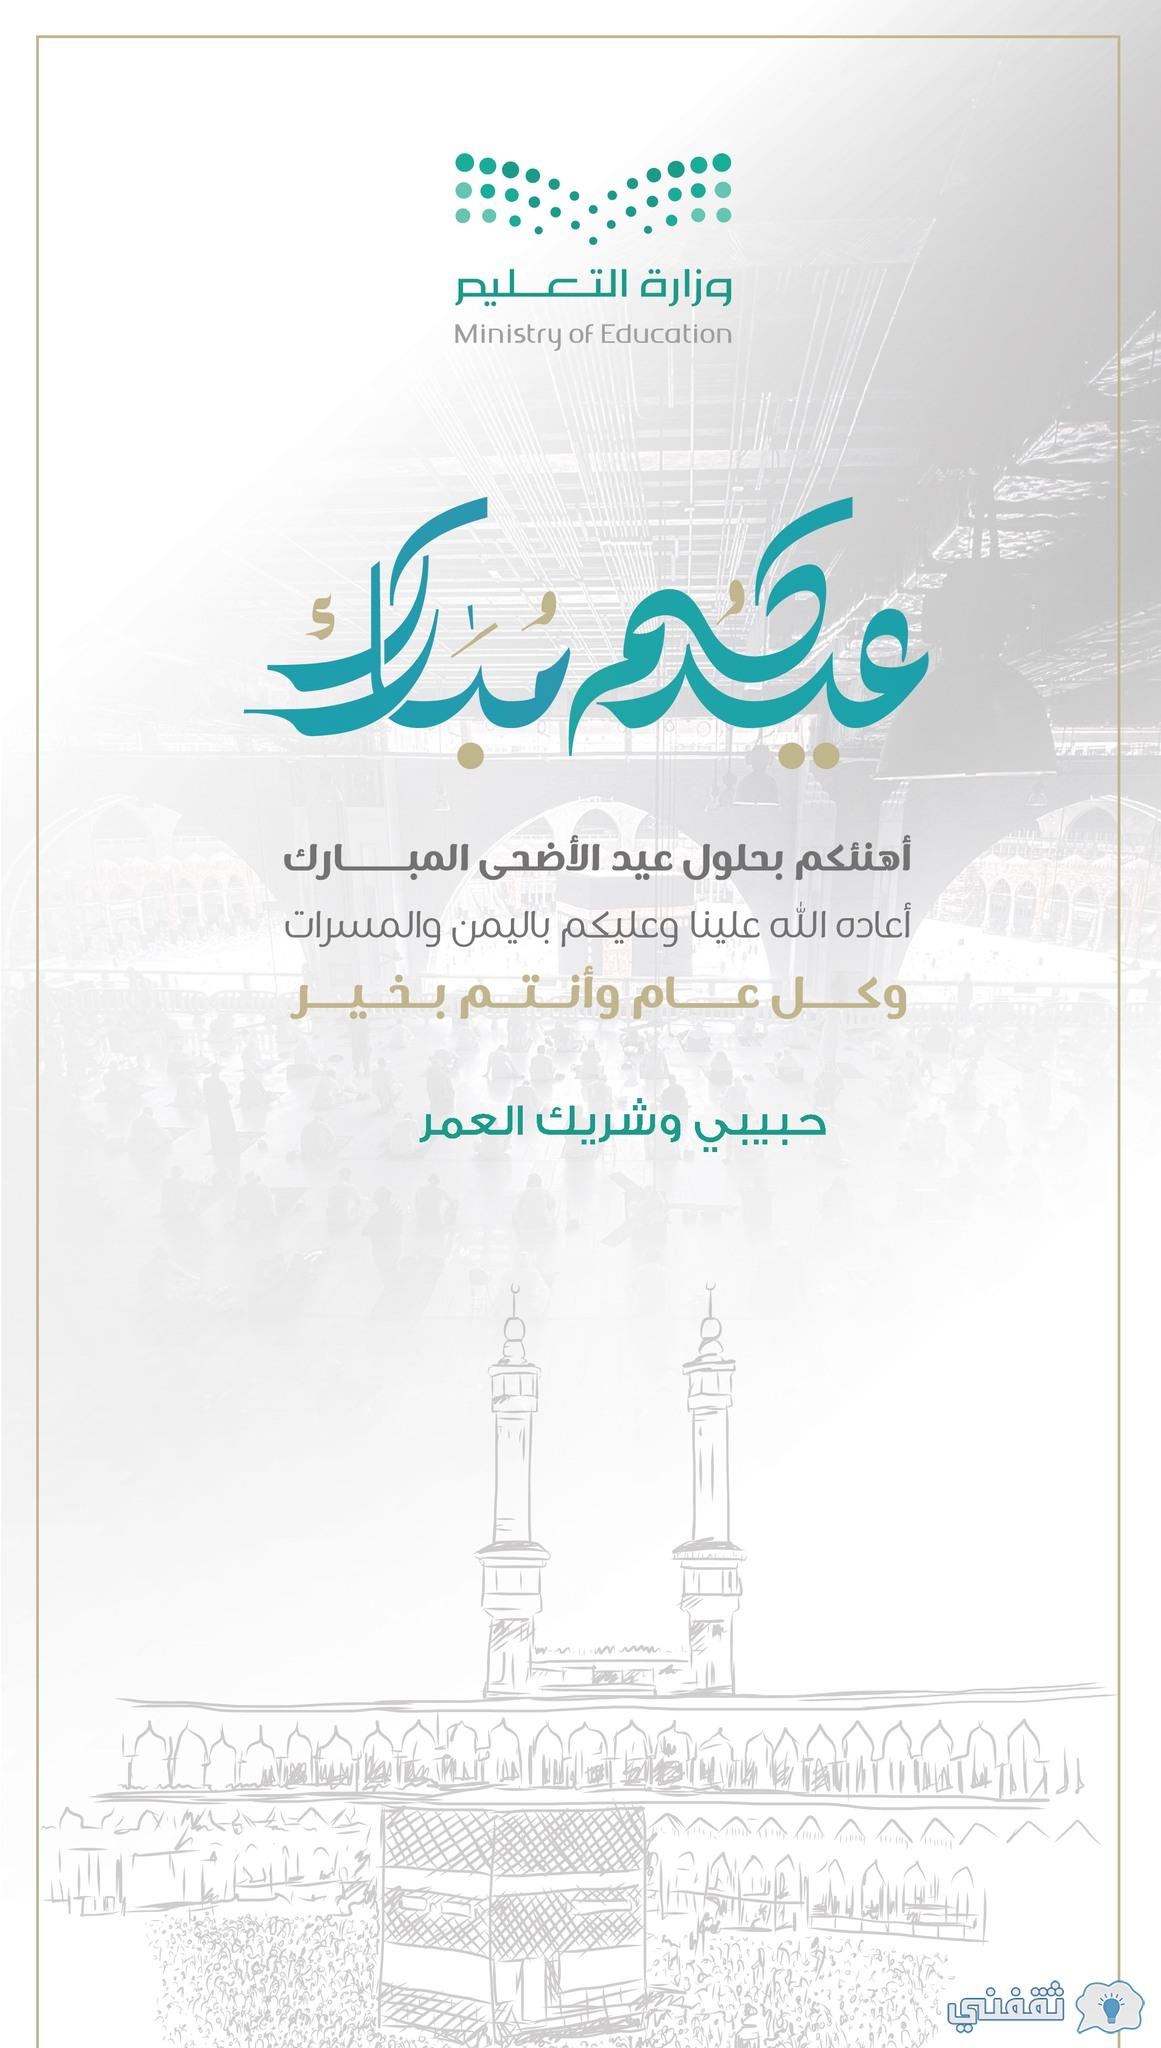 رابط تصميم بطاقة تهنئة بالعيد moe.gov.sa اكتب اسمك على بطاقة عيد الأضحى 1443 وزارة التعليم